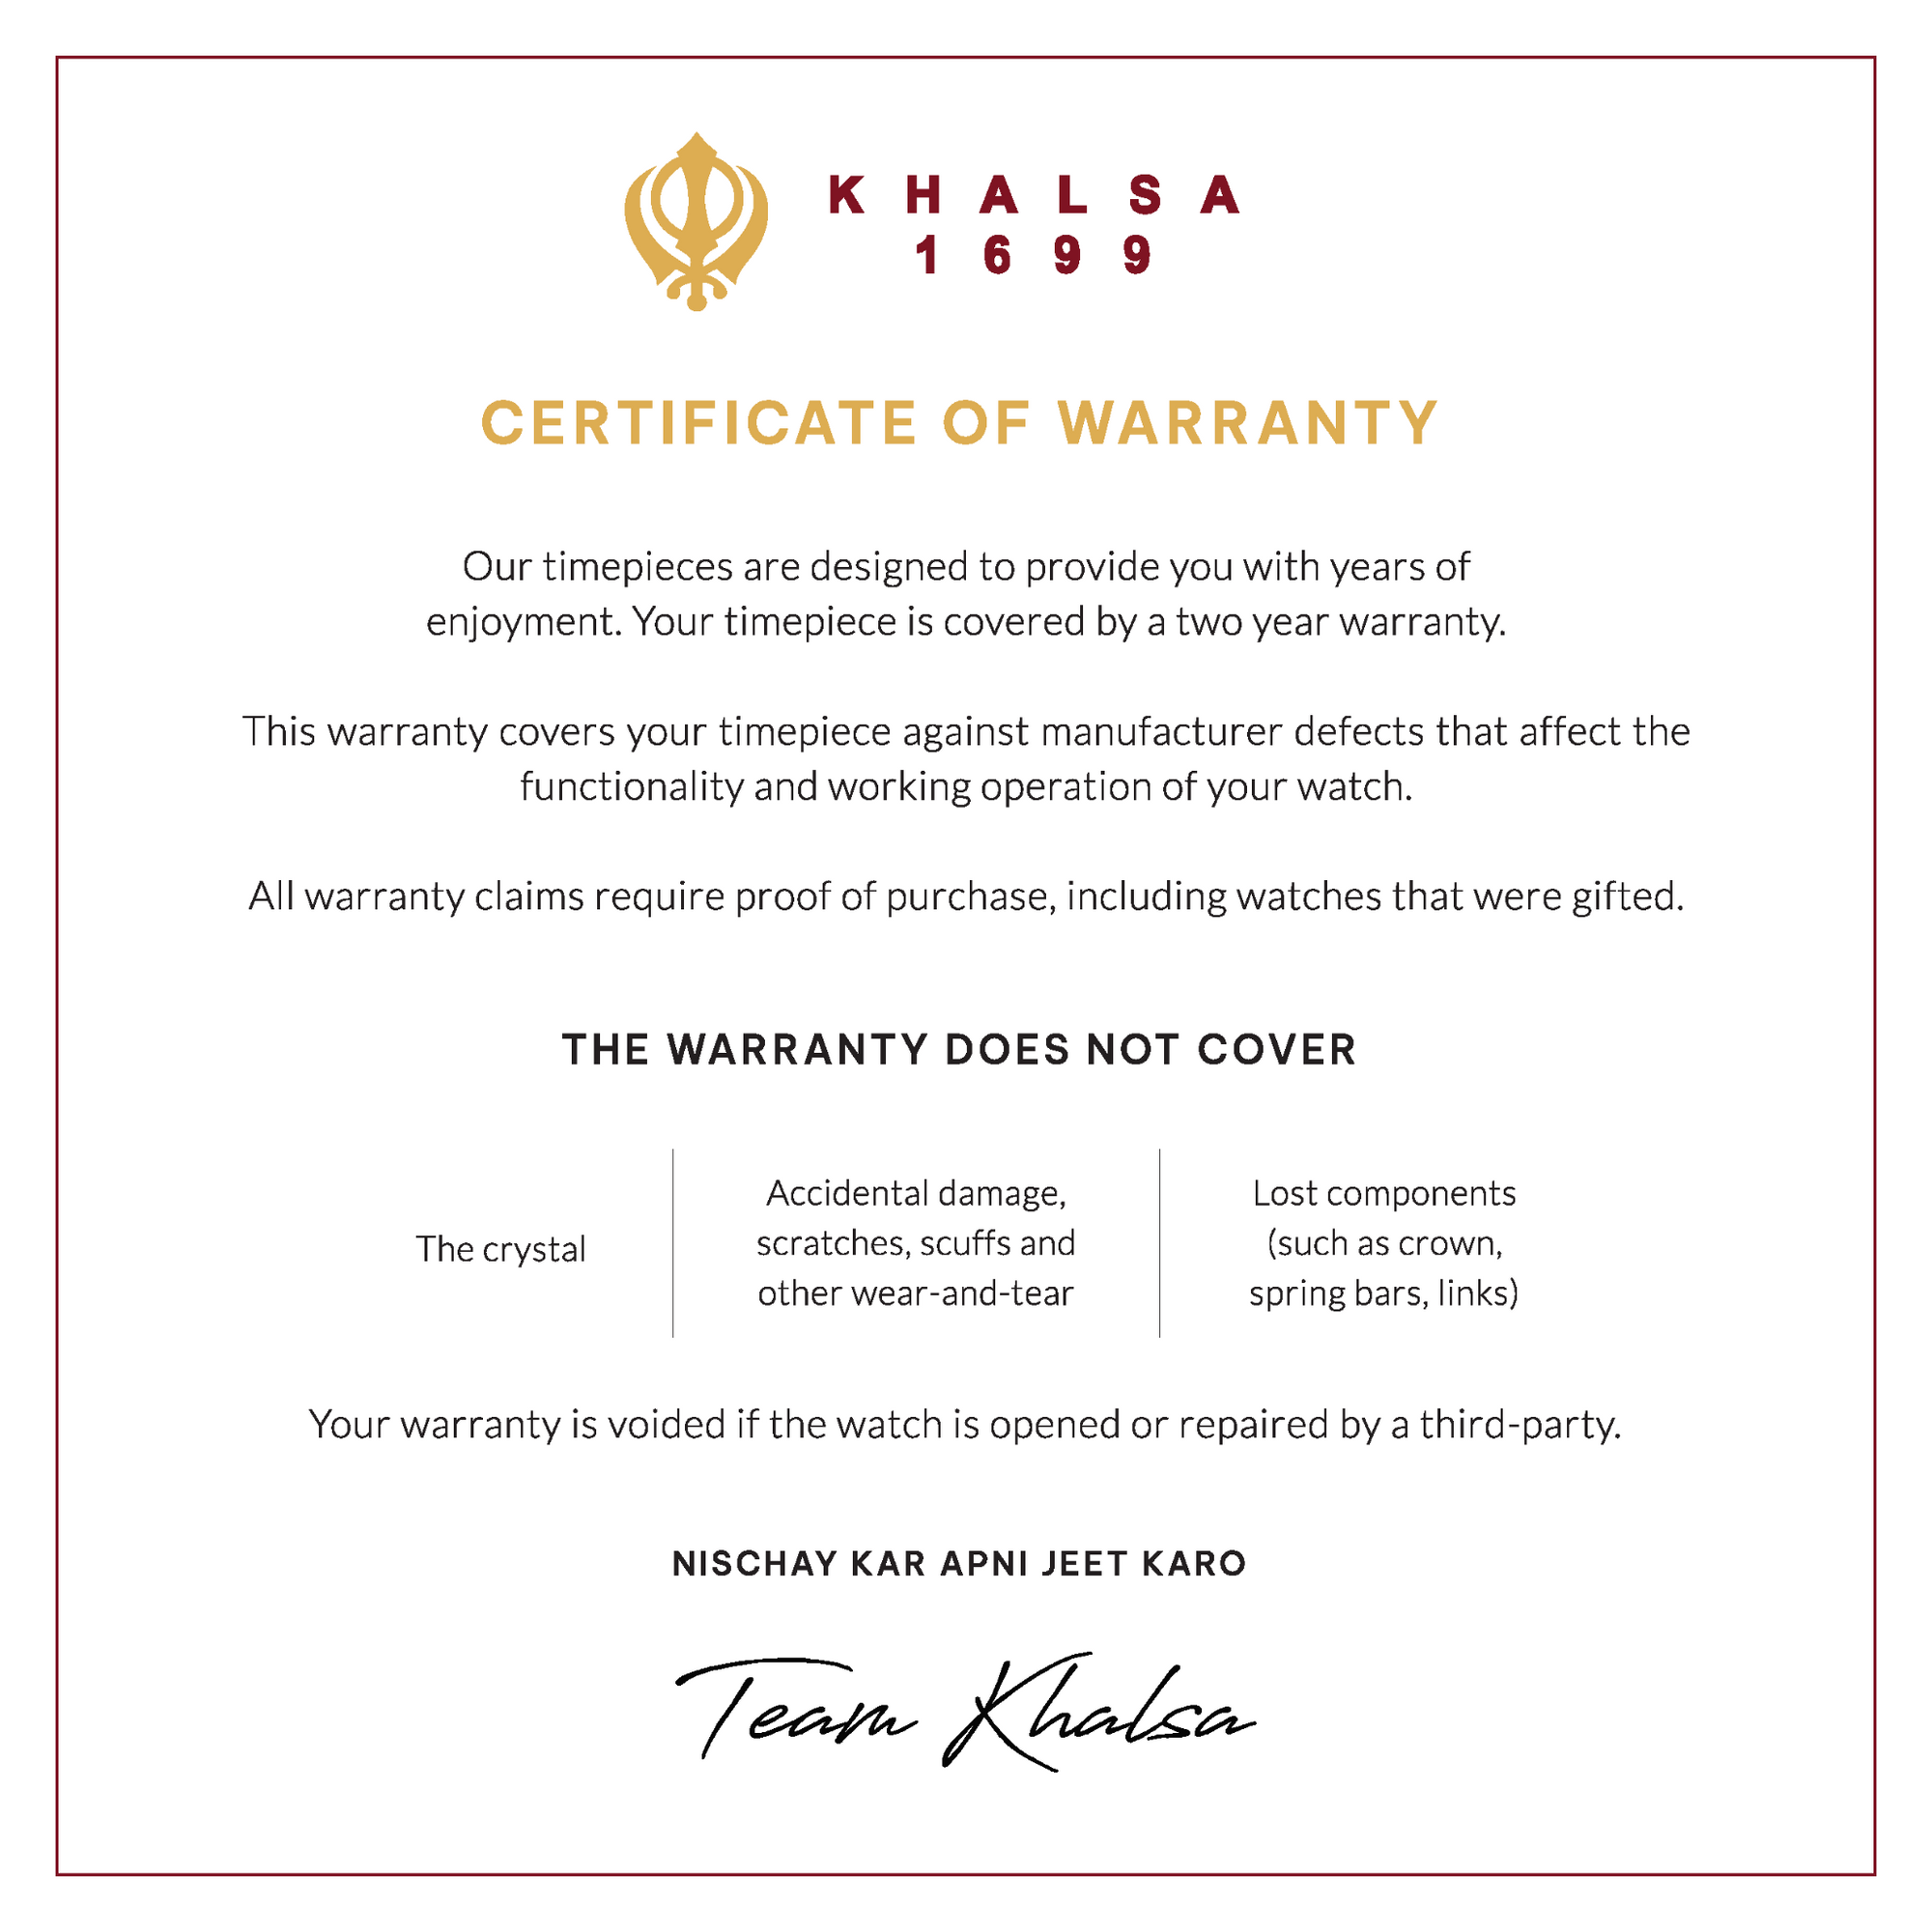 Certificate of warranty house of warranty